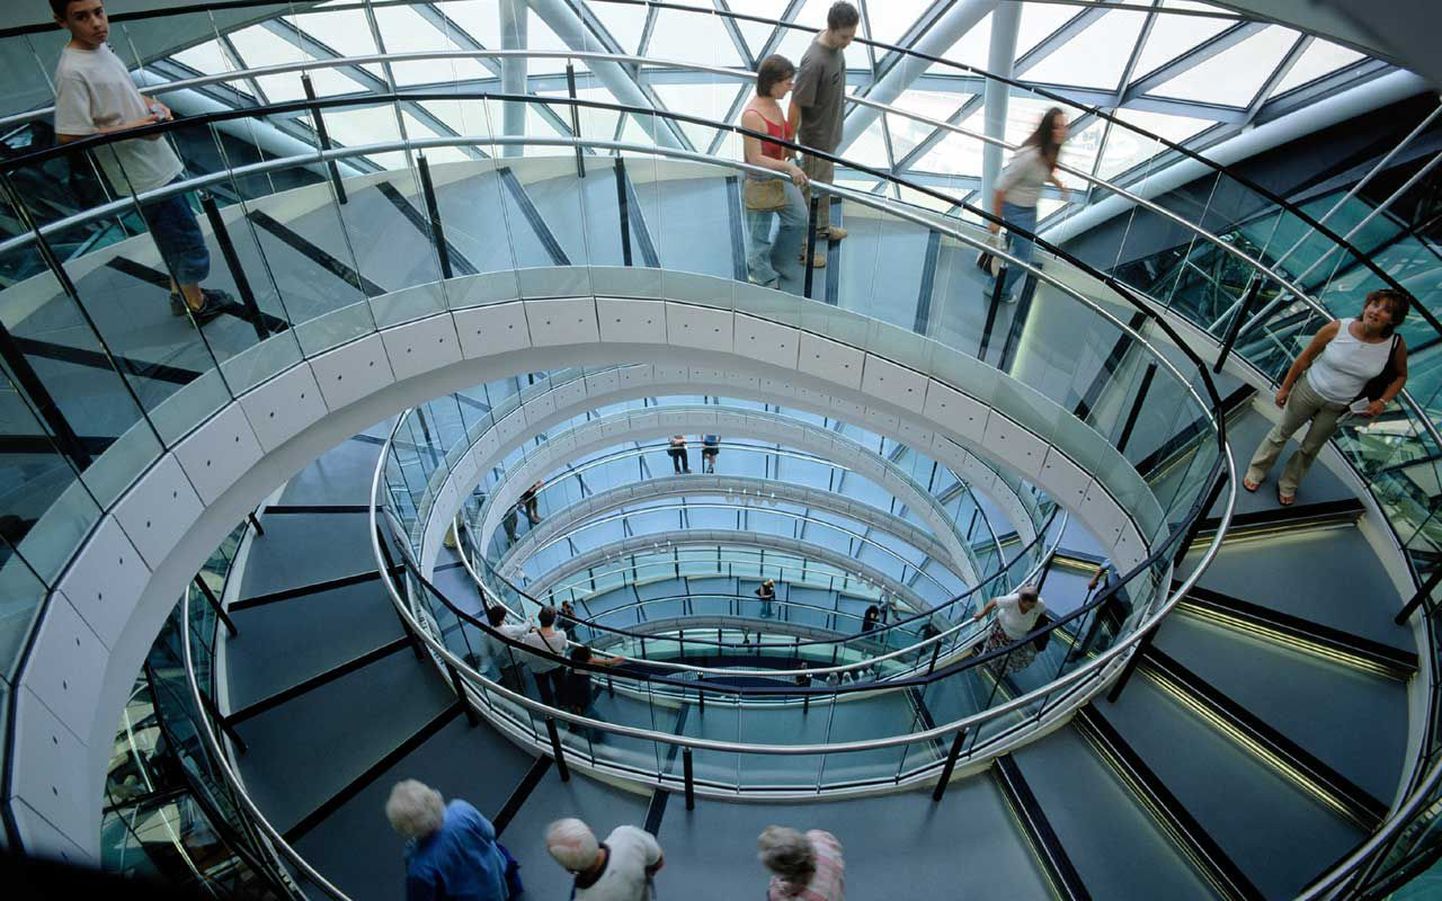 Maailma üks unkaalsemaid treppe asub London City Hall'is, mille autoriks ilmakuulus arhitekt Norman Foster.